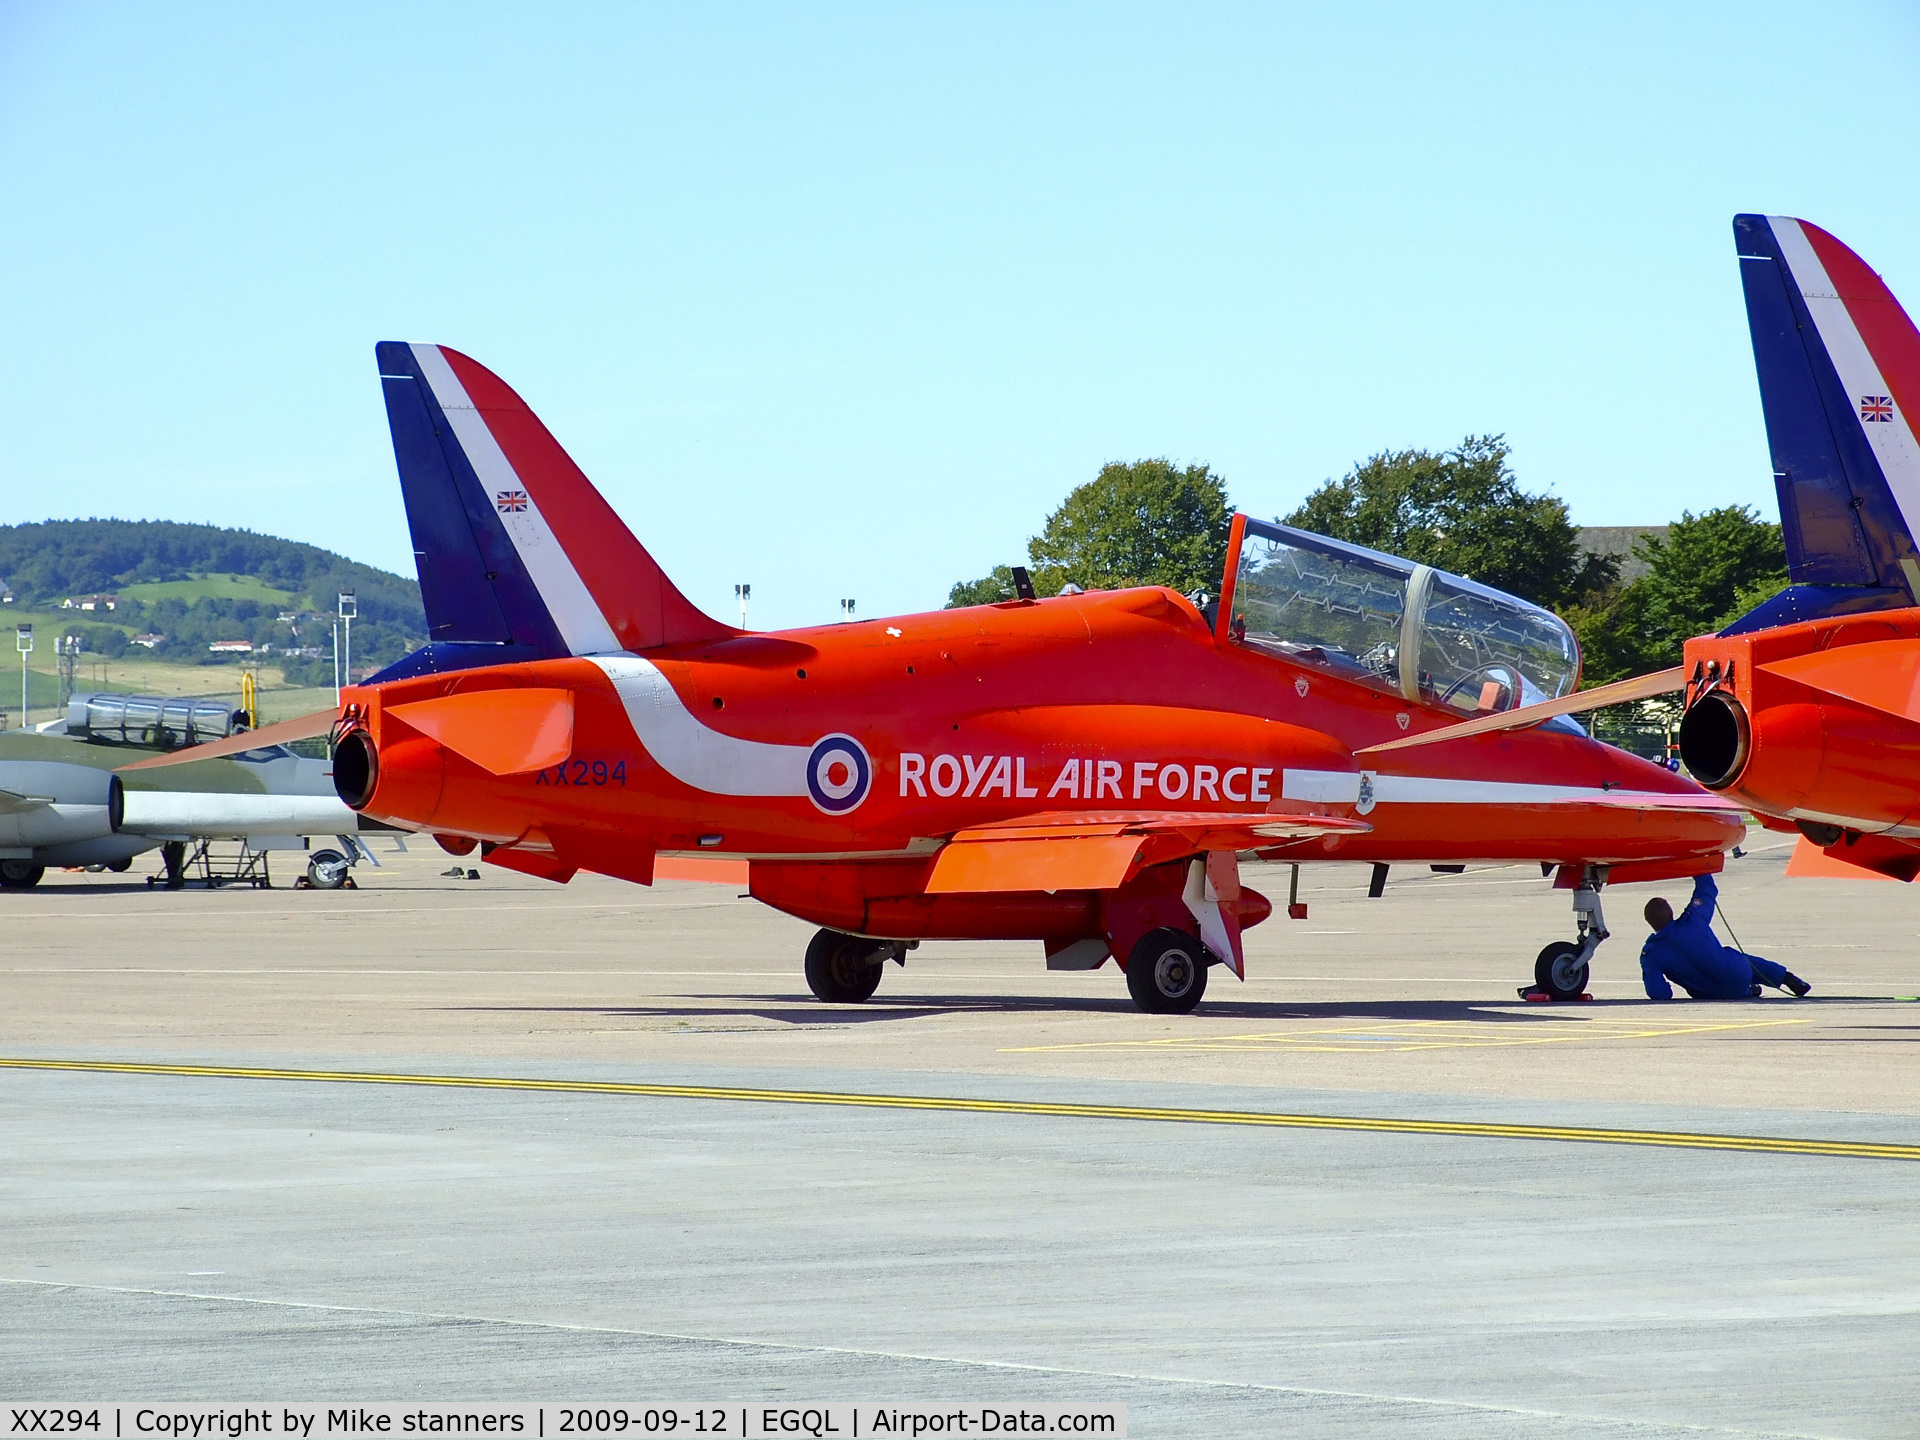 XX294, 1979 Hawker Siddeley Hawk T.1 C/N 122/312119, Red arrows Hawk on the flightline at Leuchars airshow 2009